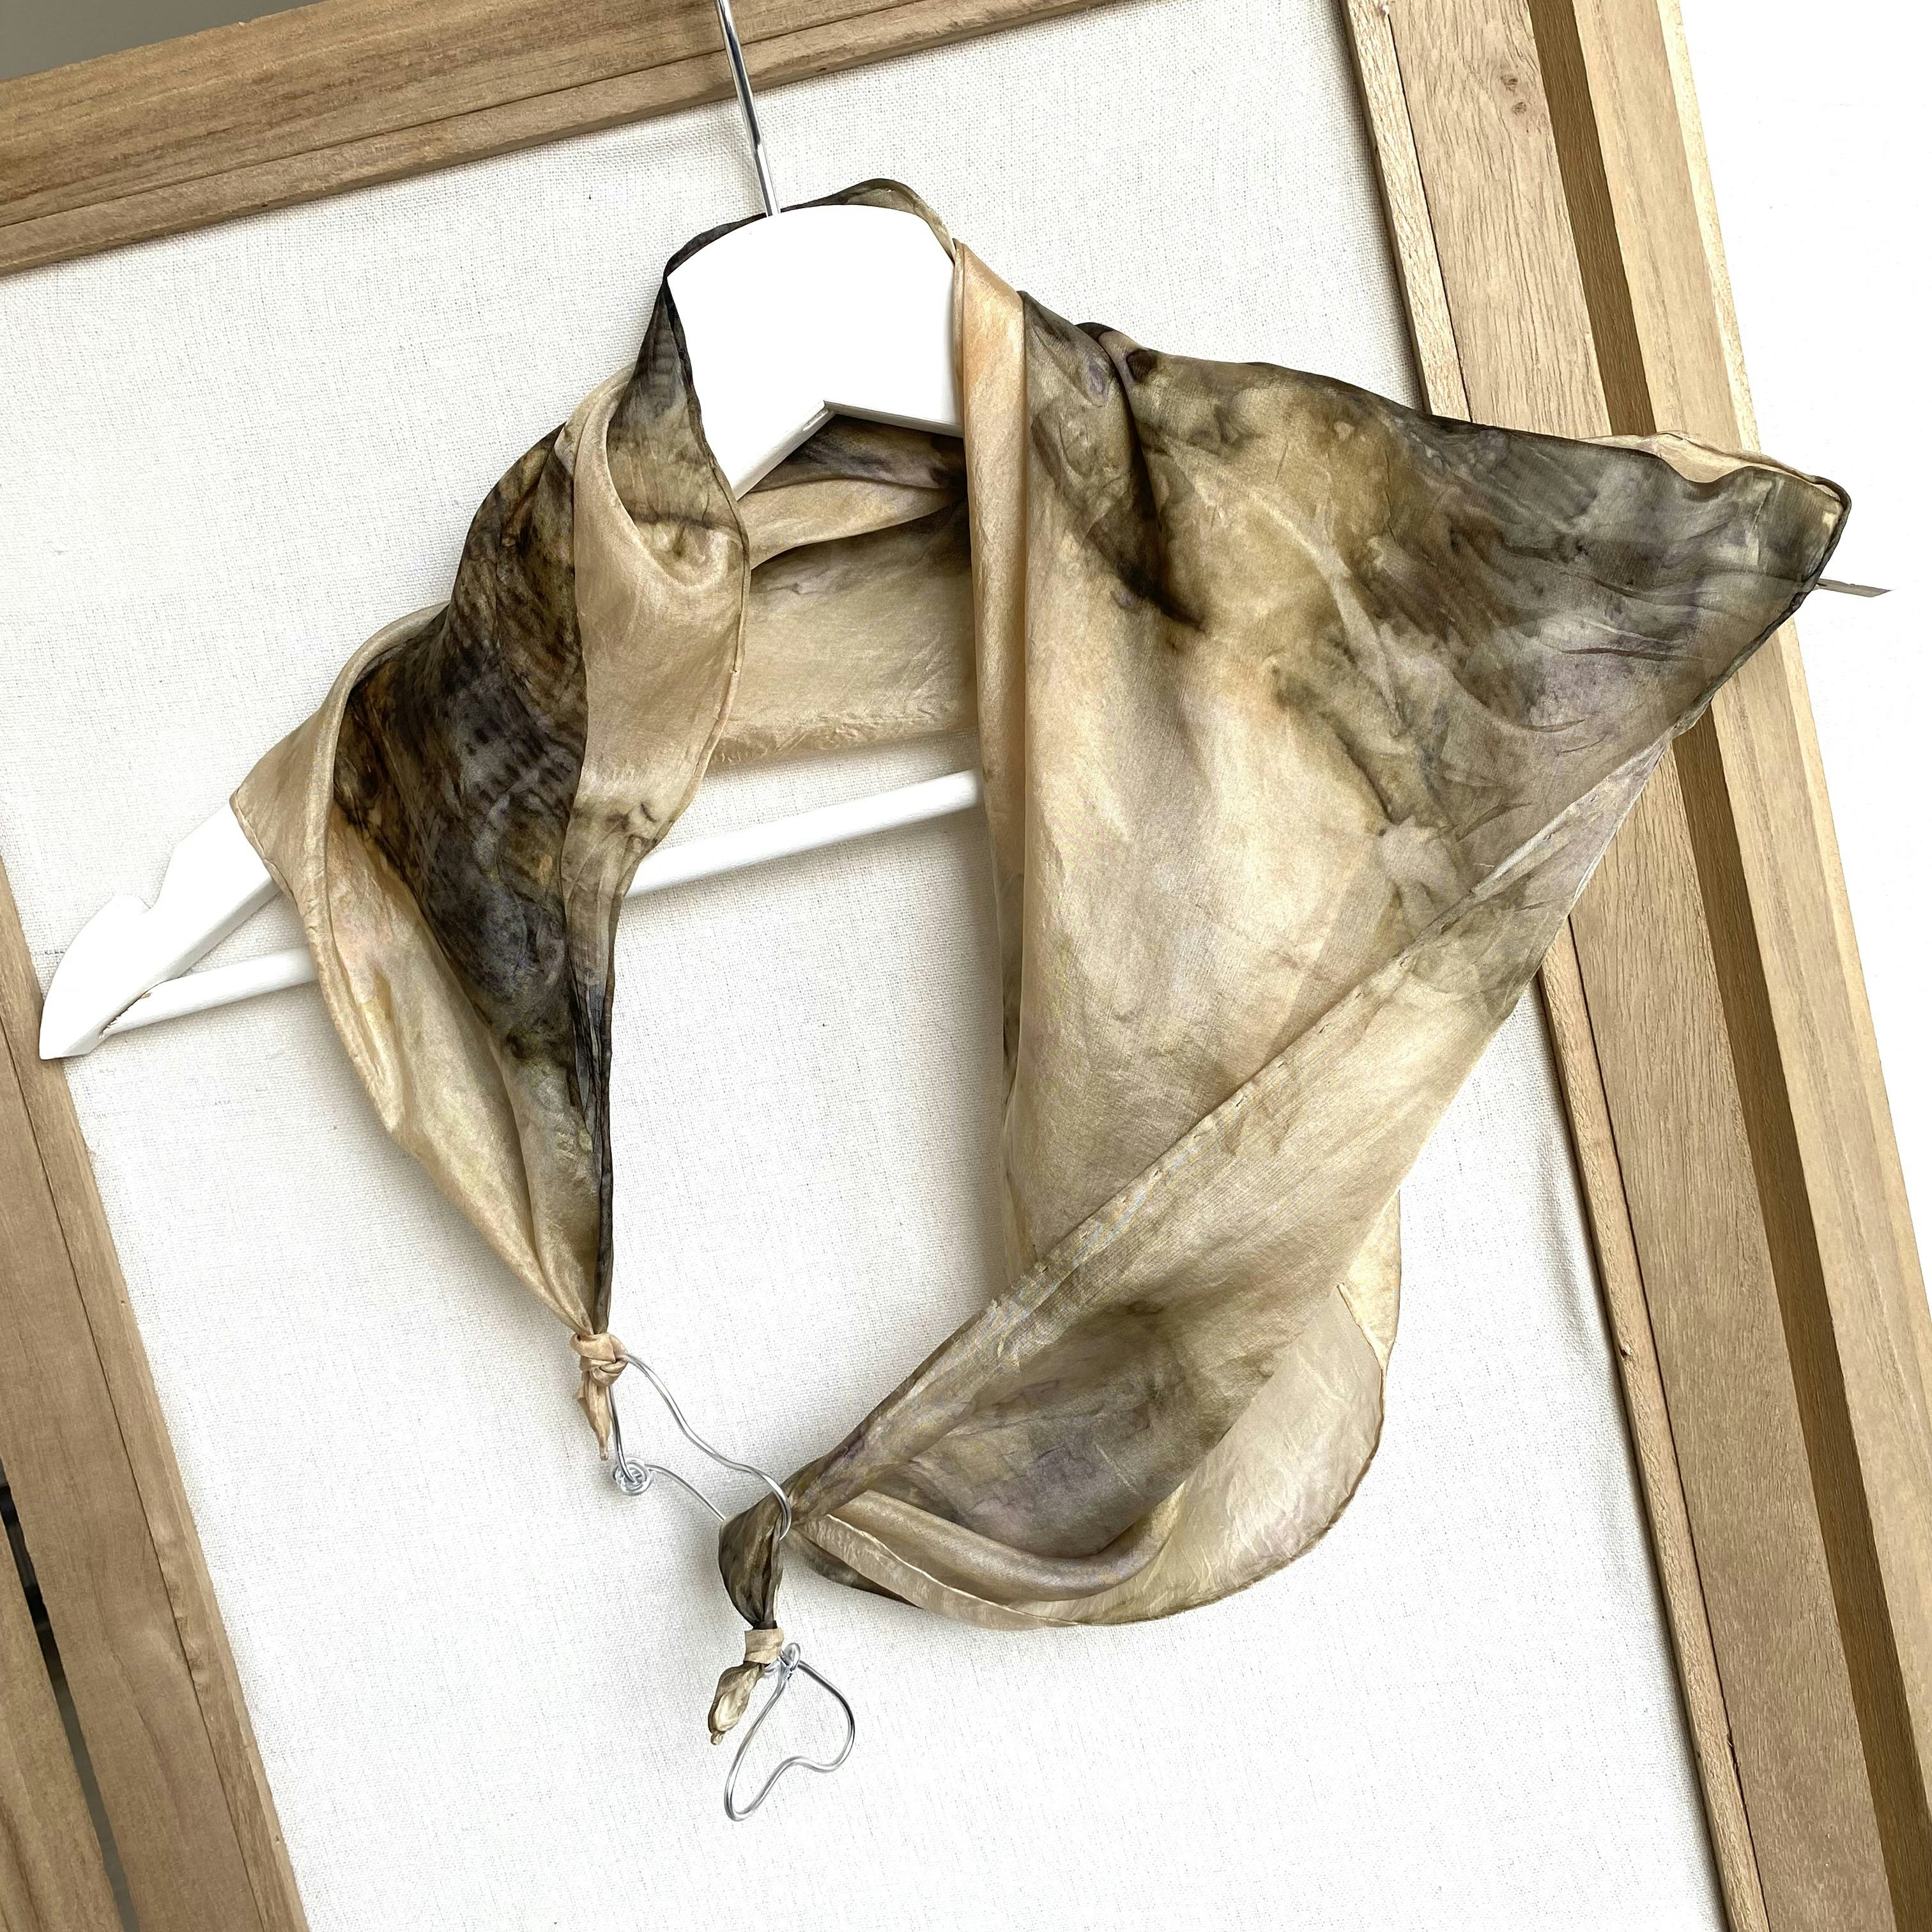 Foulard bijoux en soie teint avec feuilles d'érable, produit artisanal en vente directe en Suisse